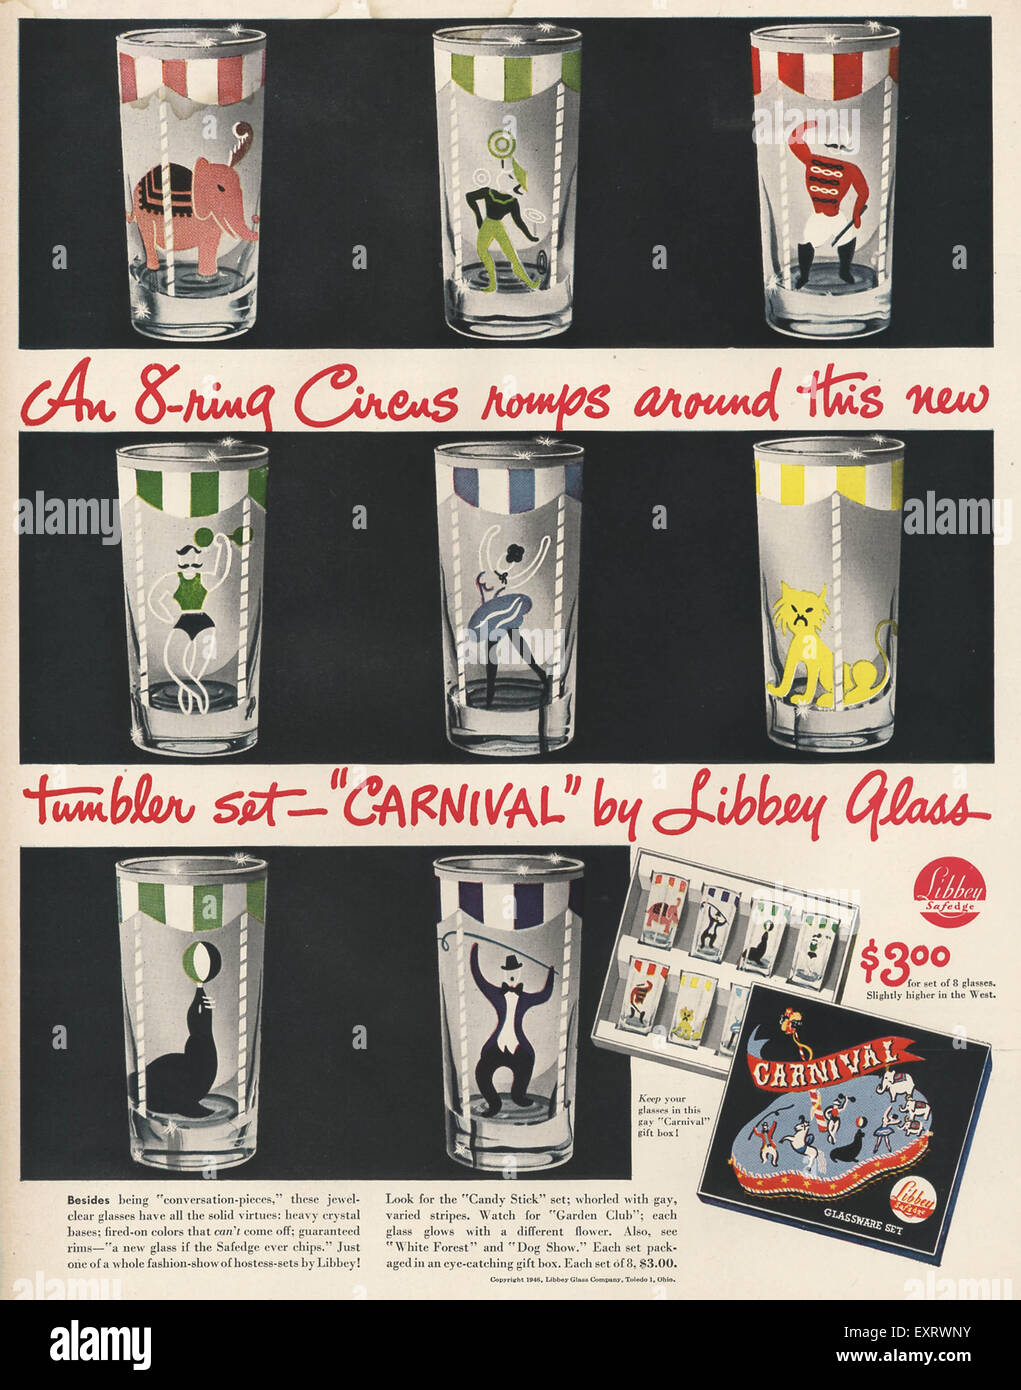 https://c8.alamy.com/comp/EXRWNY/1940s-usa-libbey-glass-magazine-advert-EXRWNY.jpg